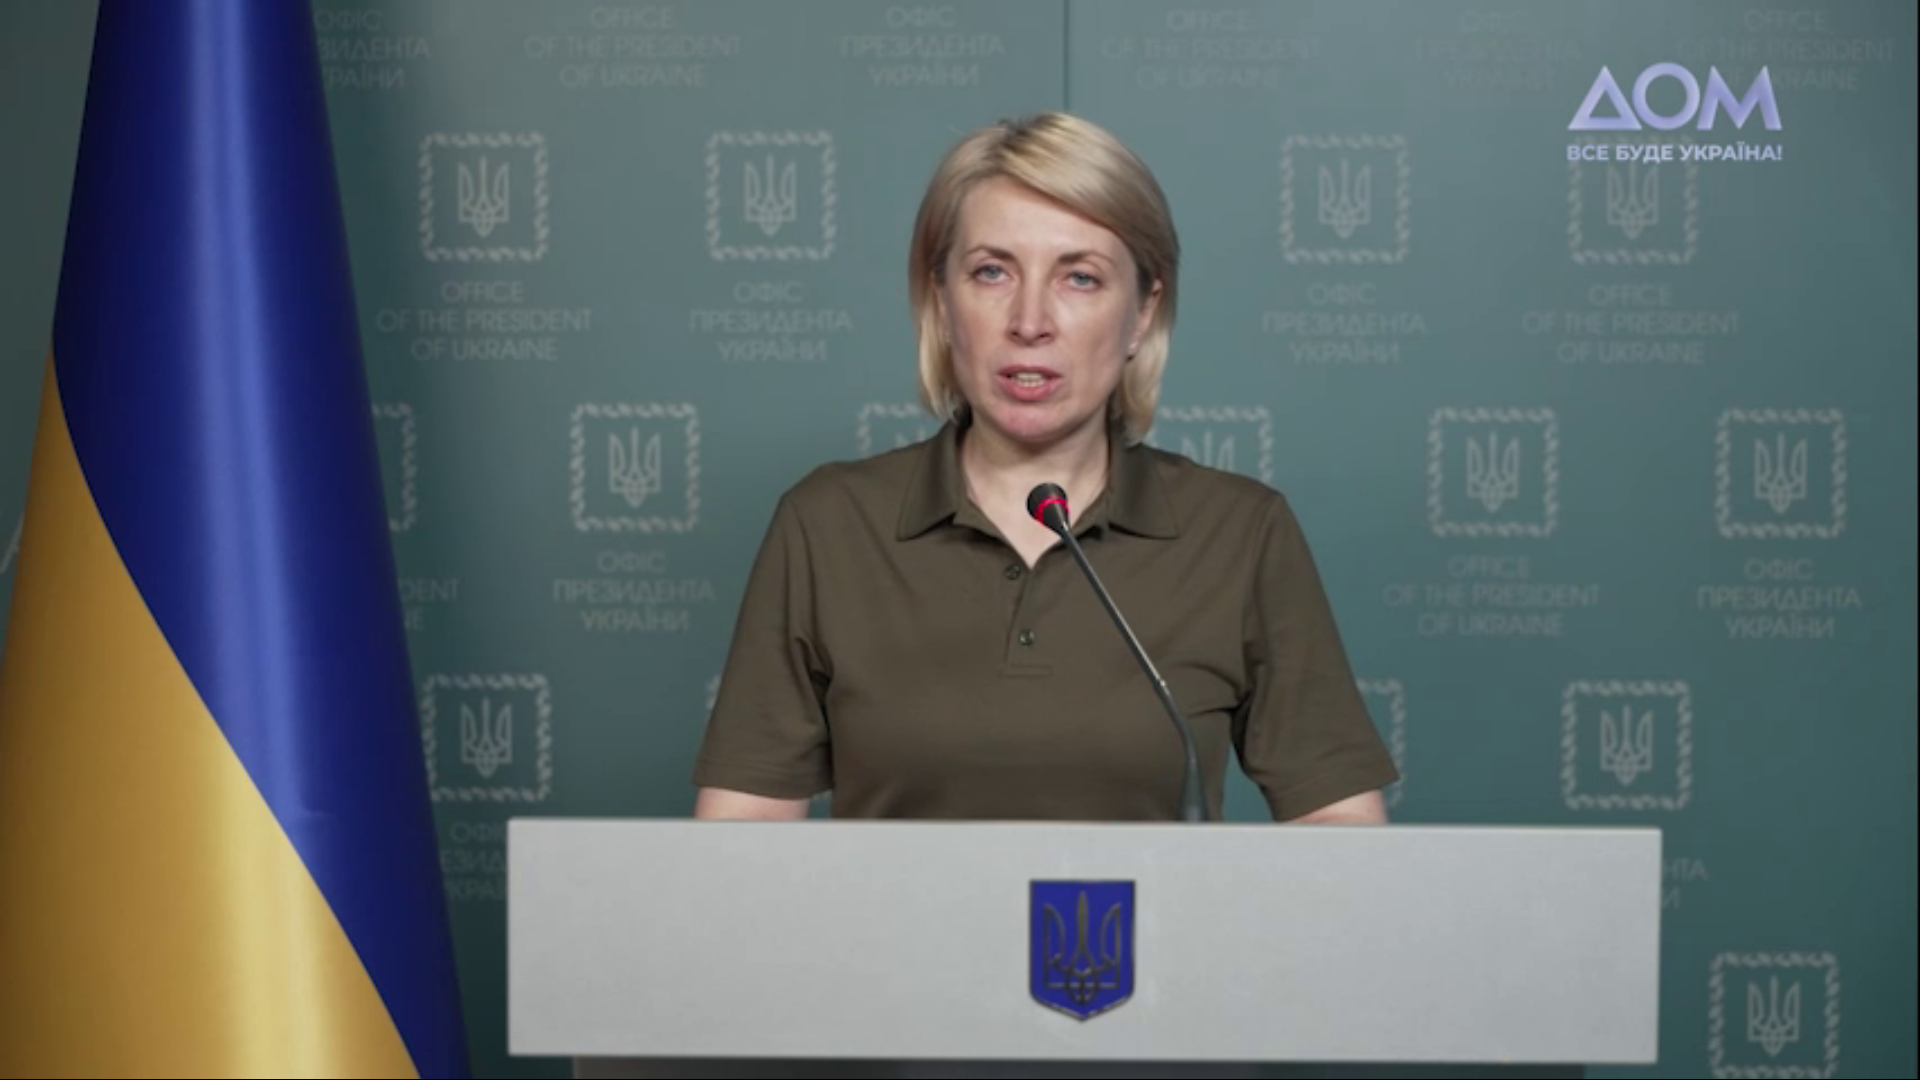 Вице-премьер Украины Ирина Верещук. Скриншот из видео телеканала «Дом»